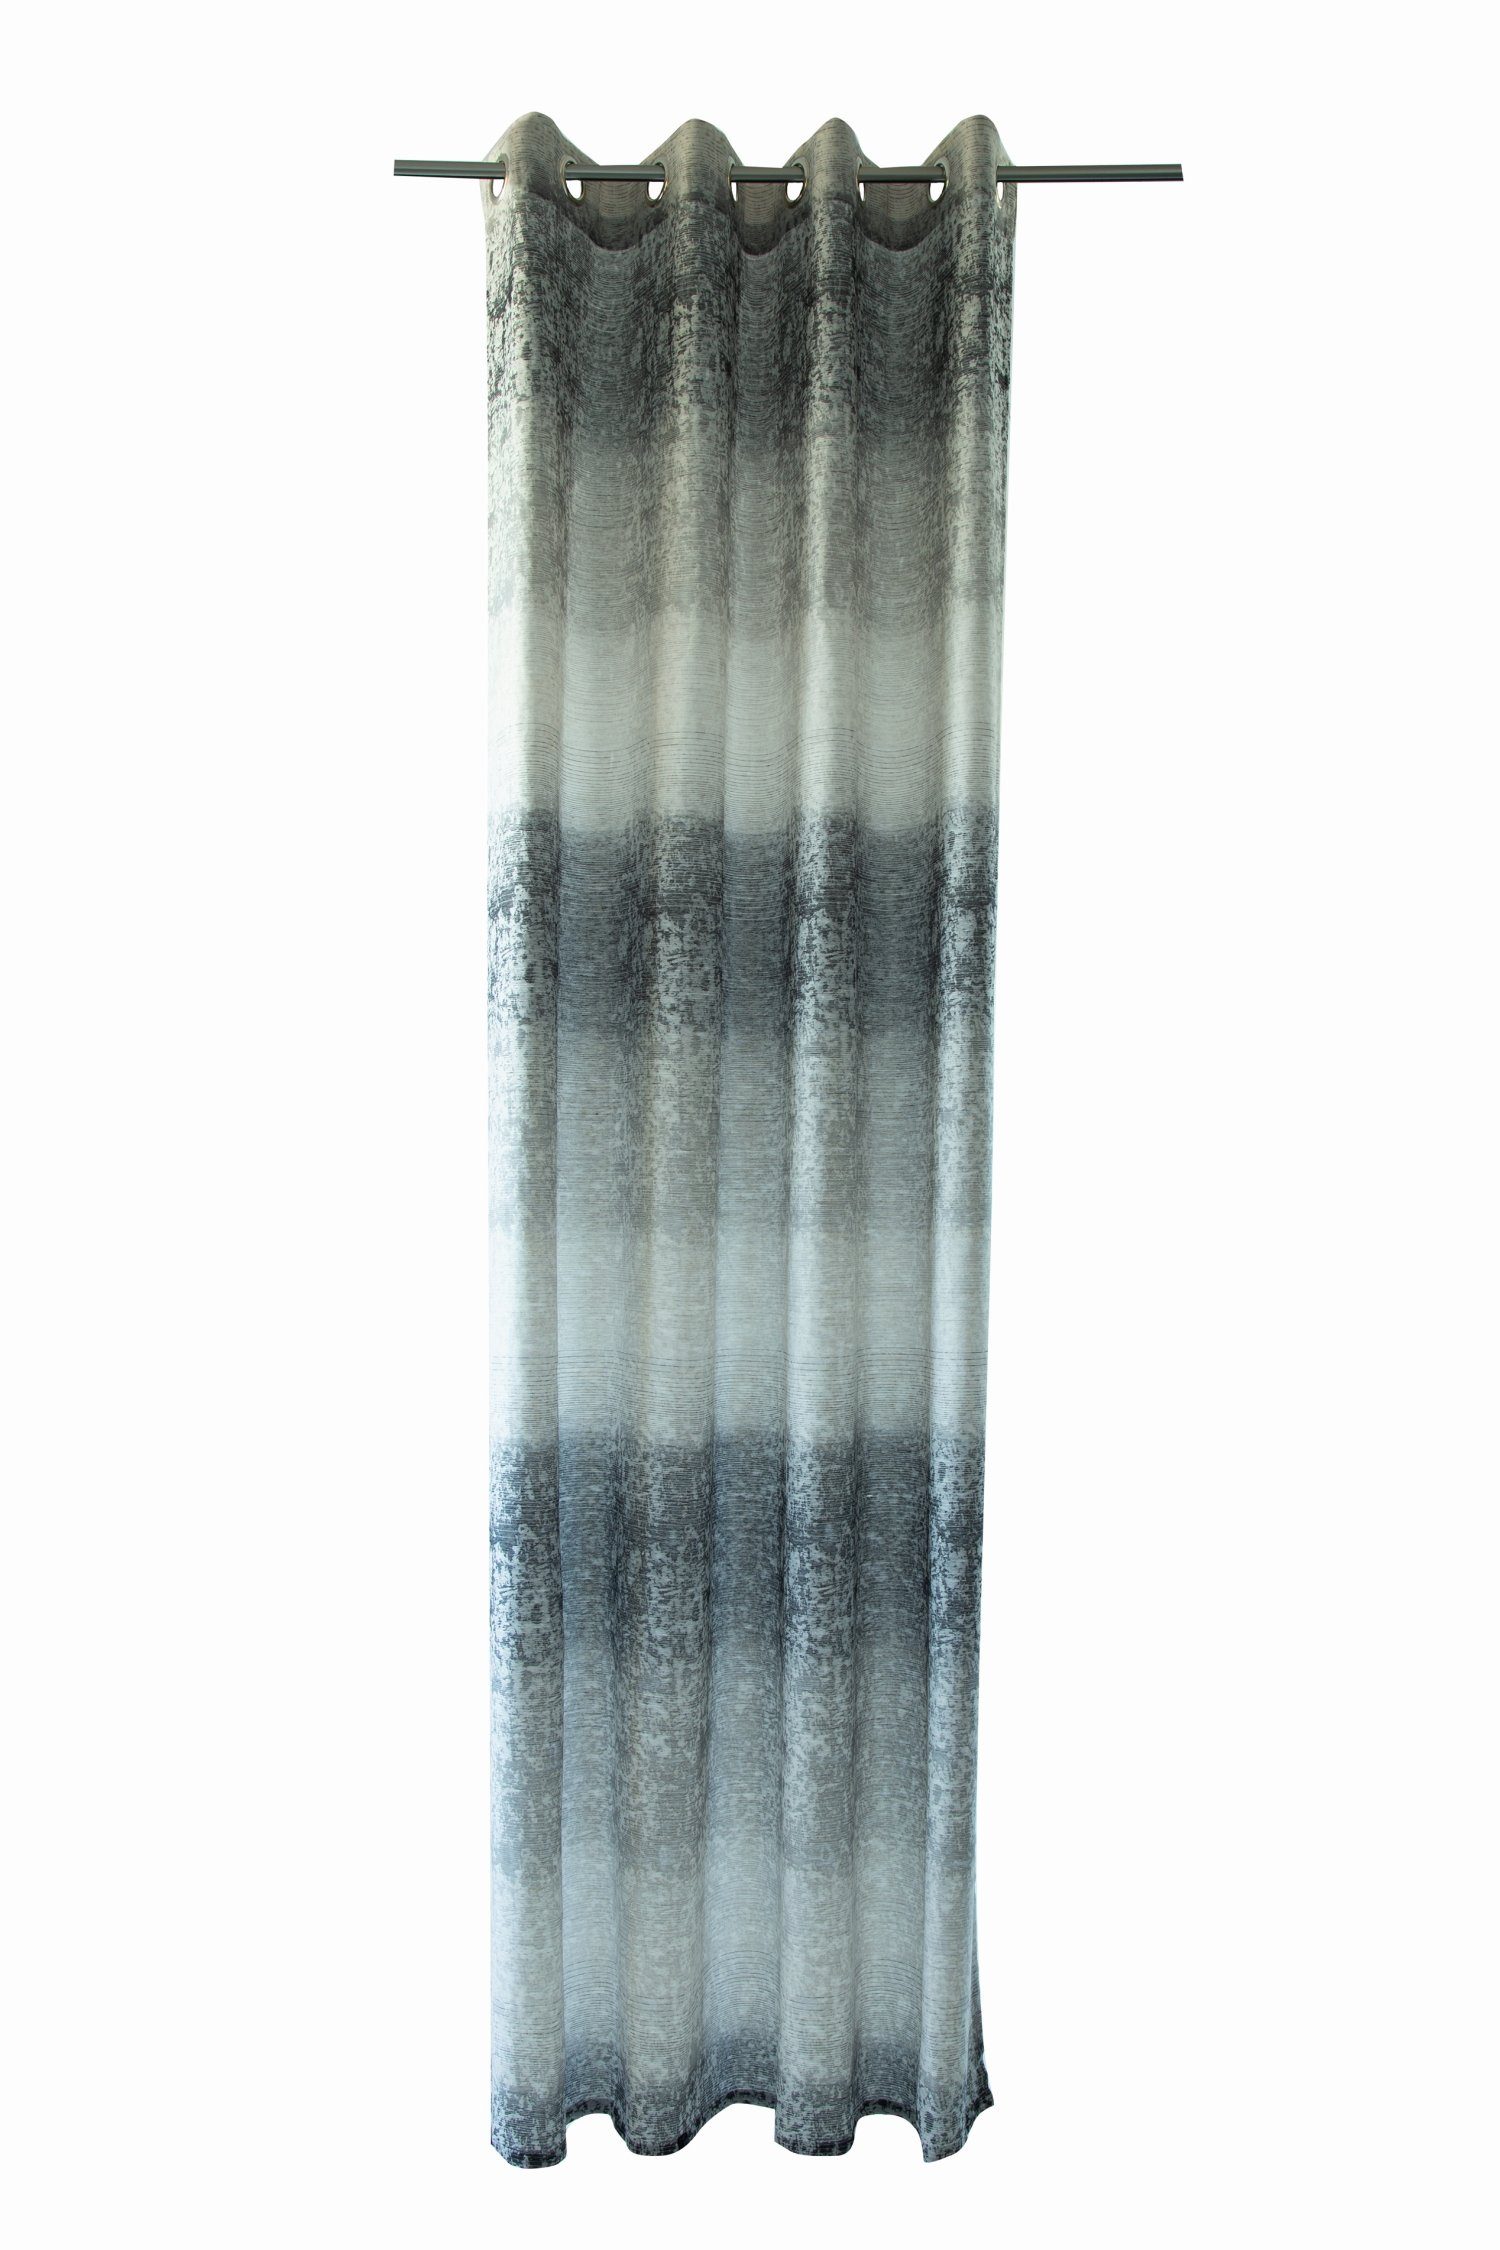 anthrazit Farbe: Vorhang, HOMING, Lichtschutz, 140x245cm Freya Ösenschal